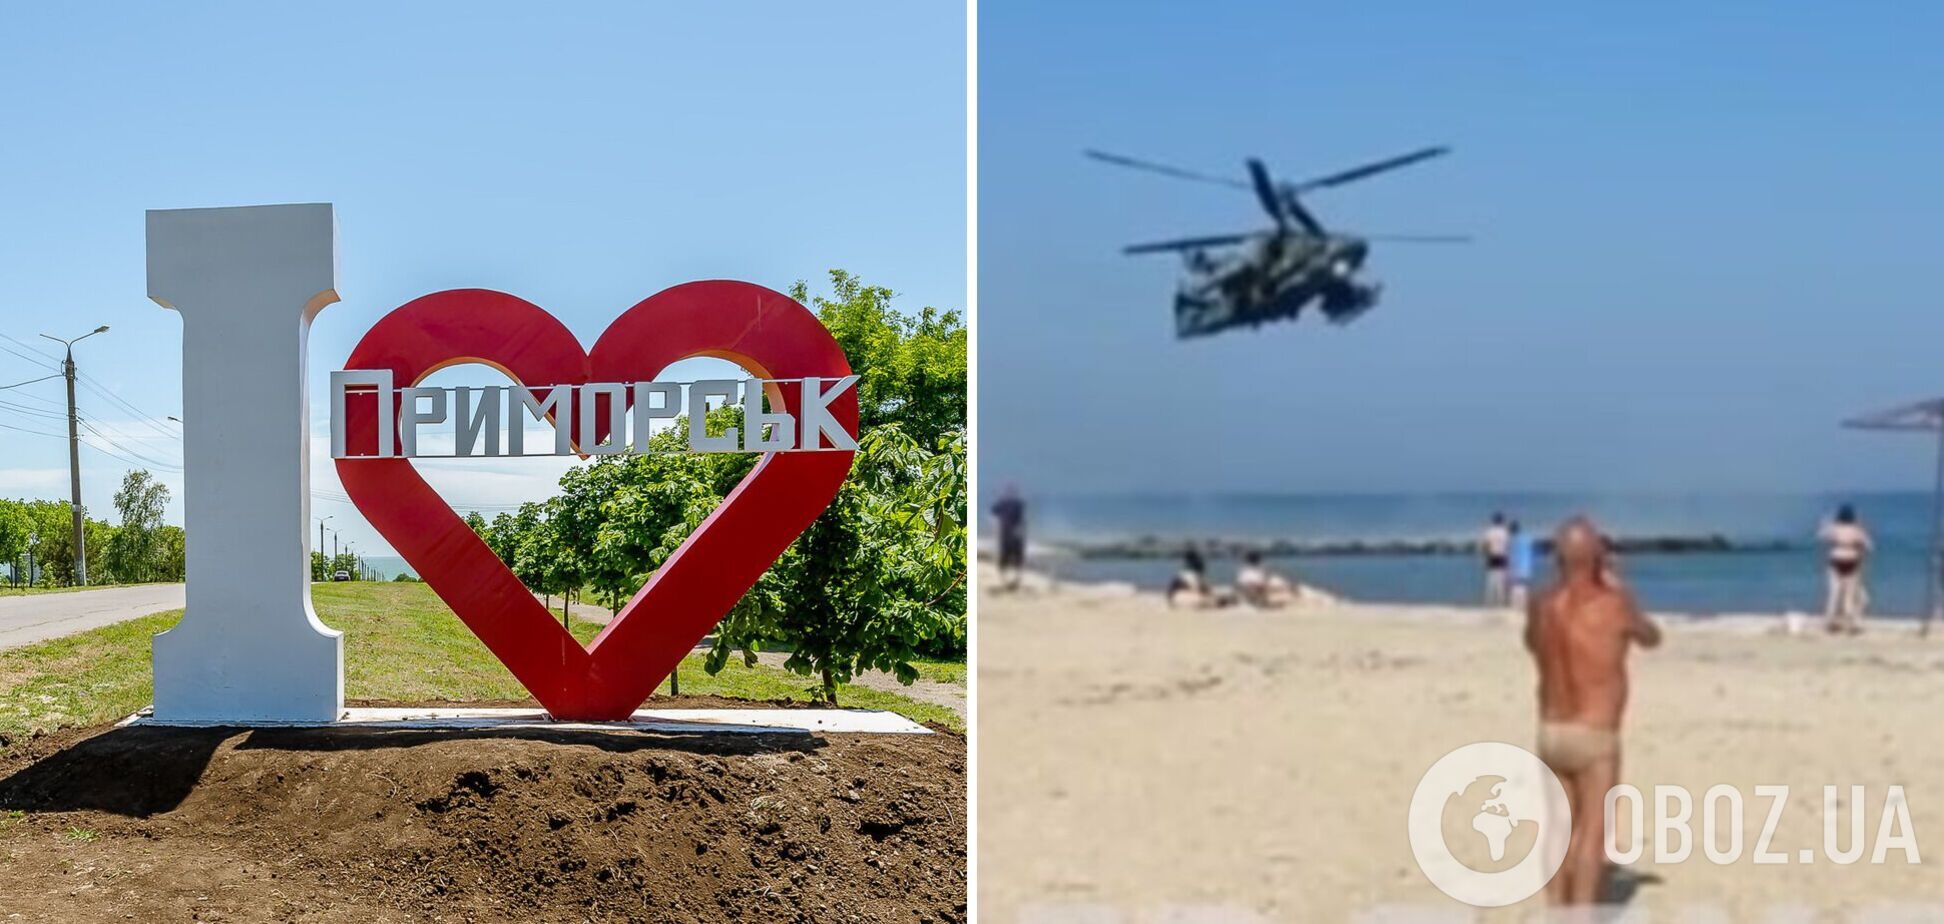 В оккупированном Приморске россияне пугали гражданских на пляже боевыми вертолетами. Видео